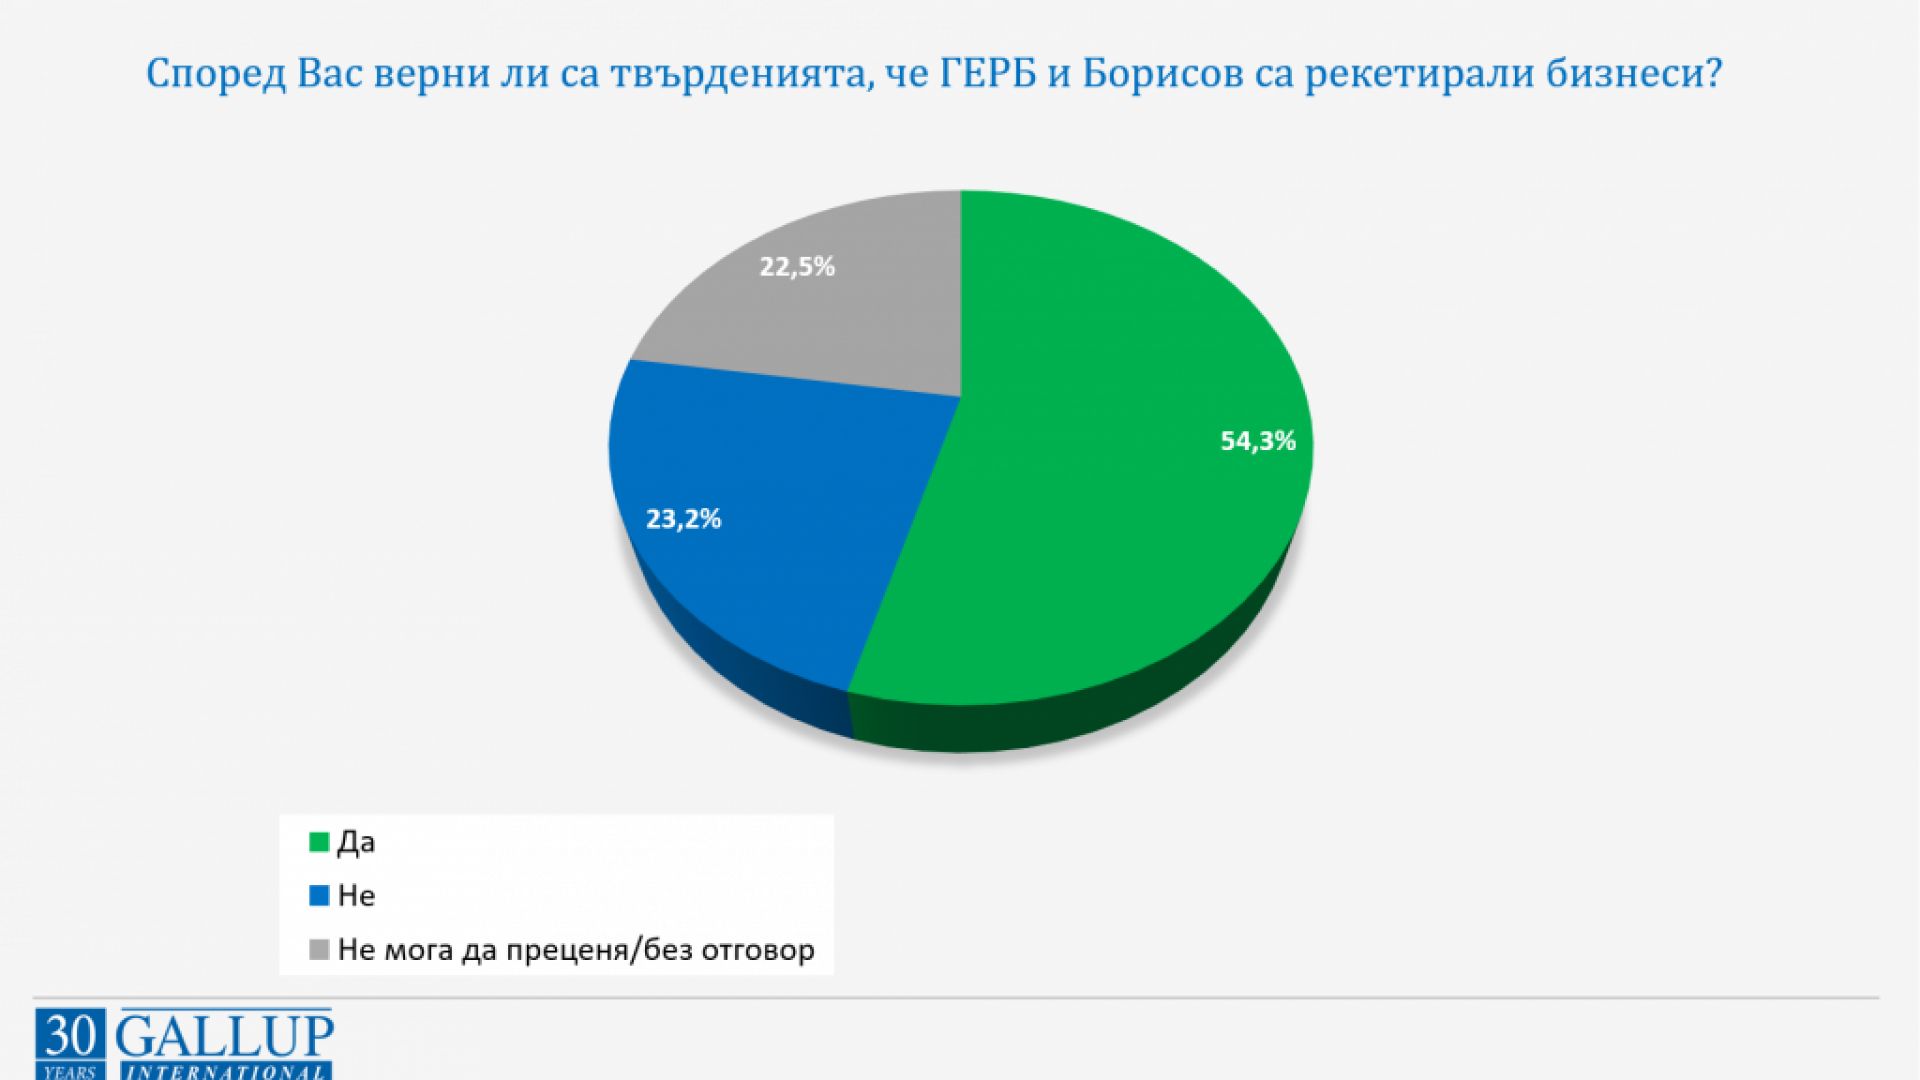 "Галъп": Повечето хора вярват, че ГЕРБ и Борисов се рекетирали бизнеси, но не са доволни от Трифонов след вота